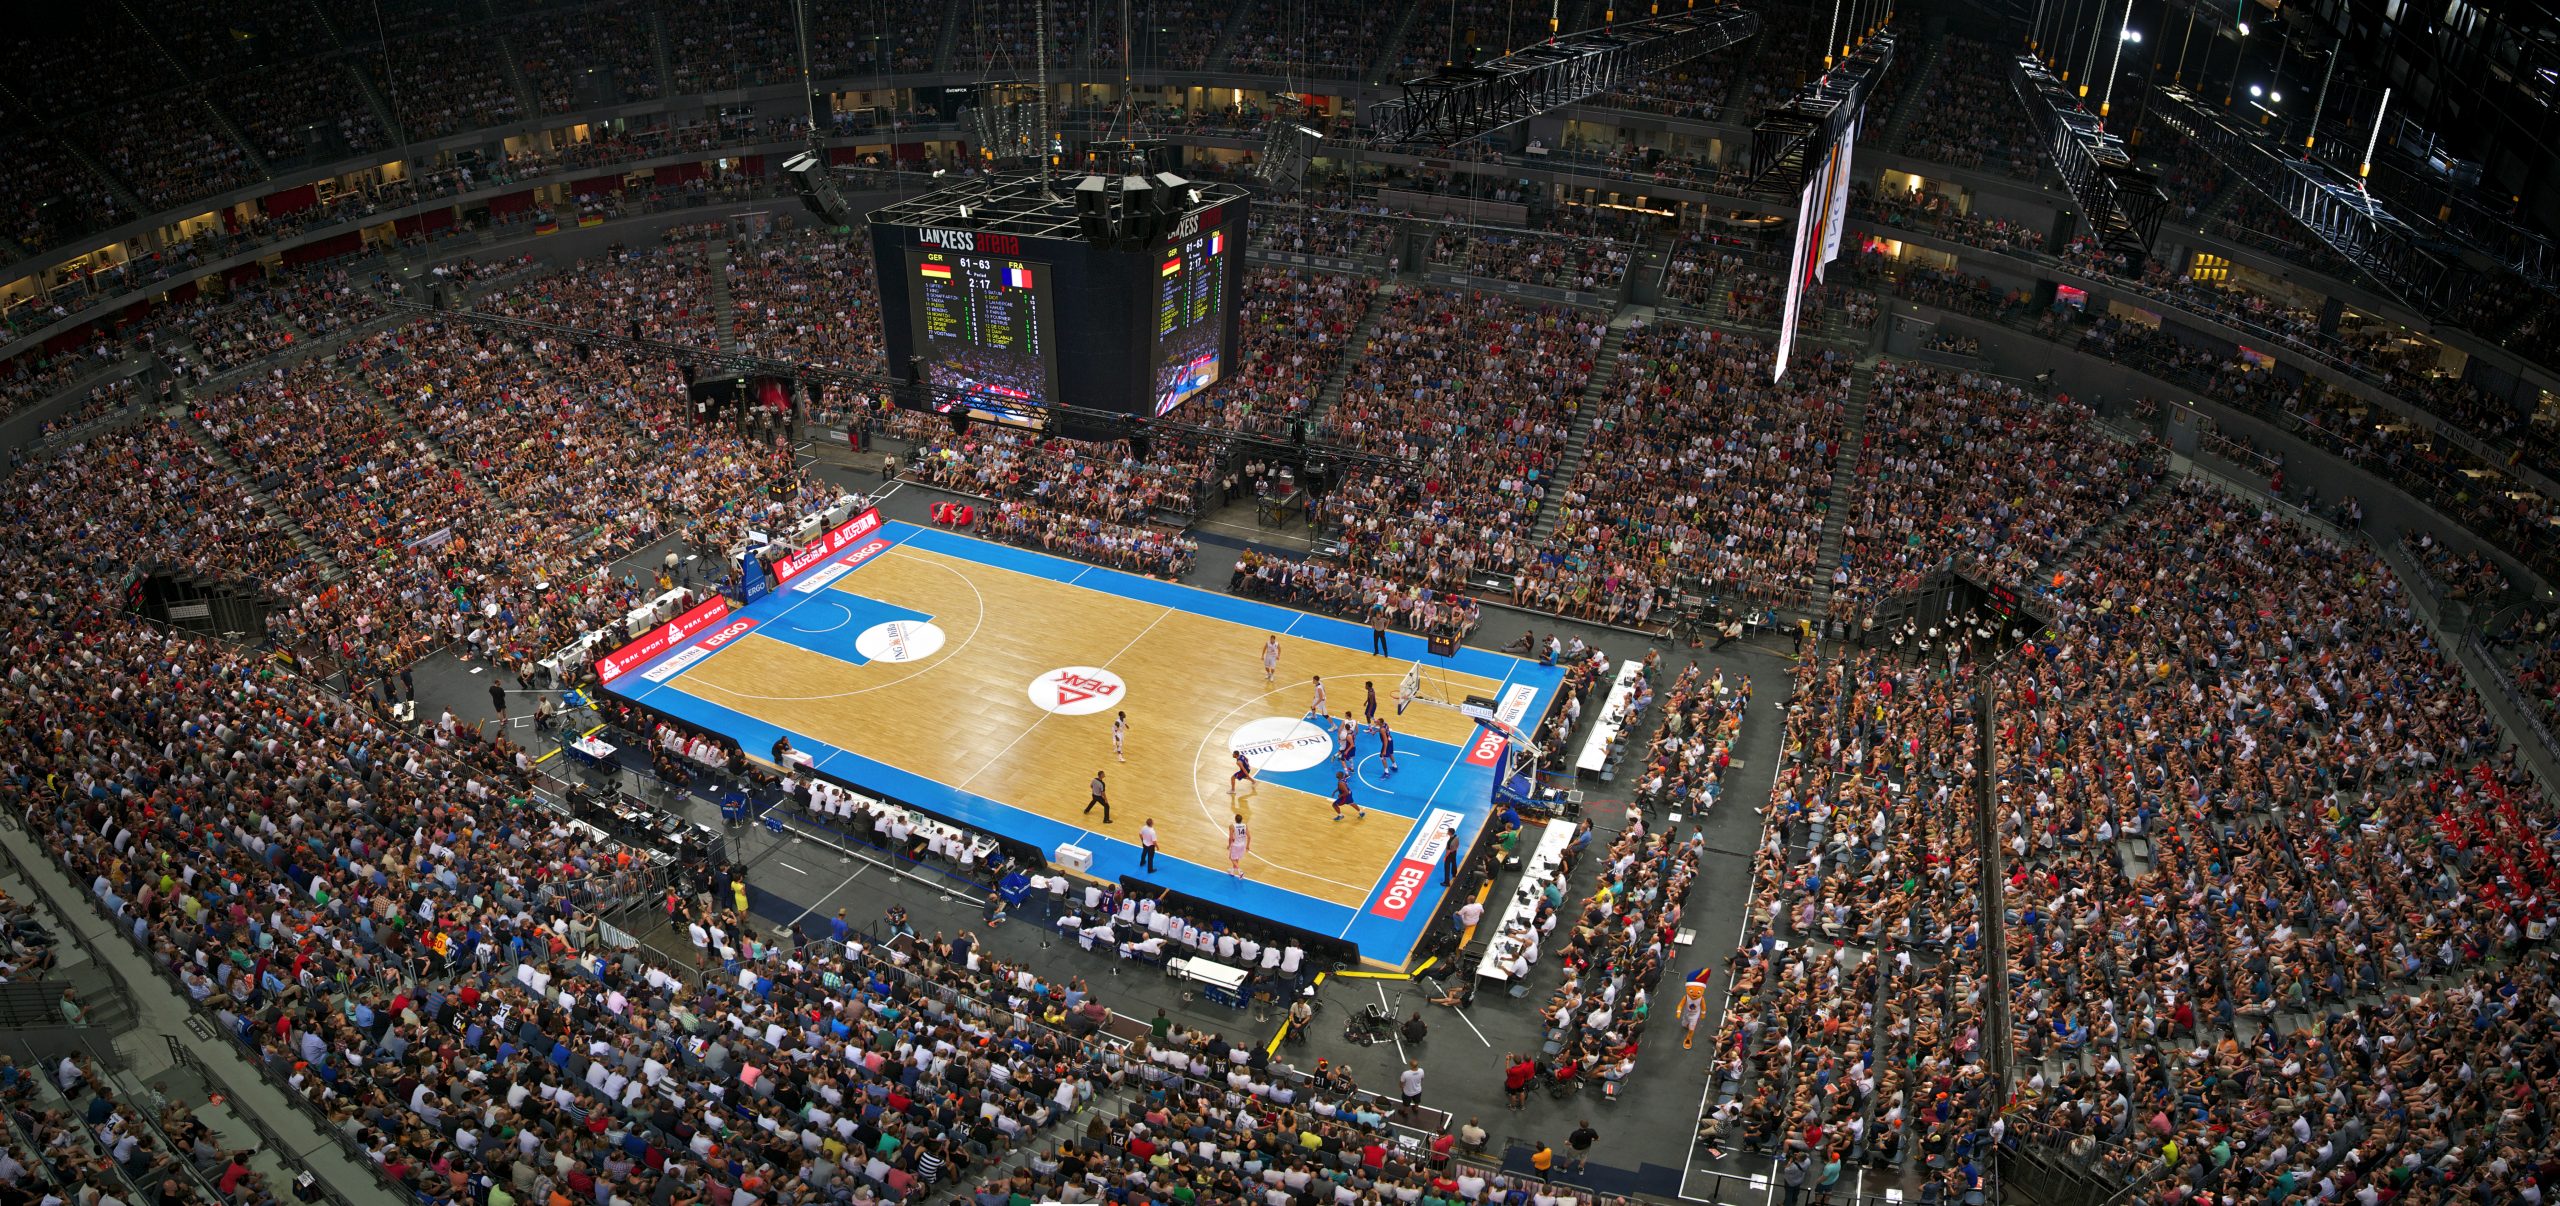 Totale der Lanxess Arena in Köln beim Länderspiel zur Vorbereitung auf die FIBA EuroBasket 2015 Deutschland gegen Frankreich am 30. August 2015.